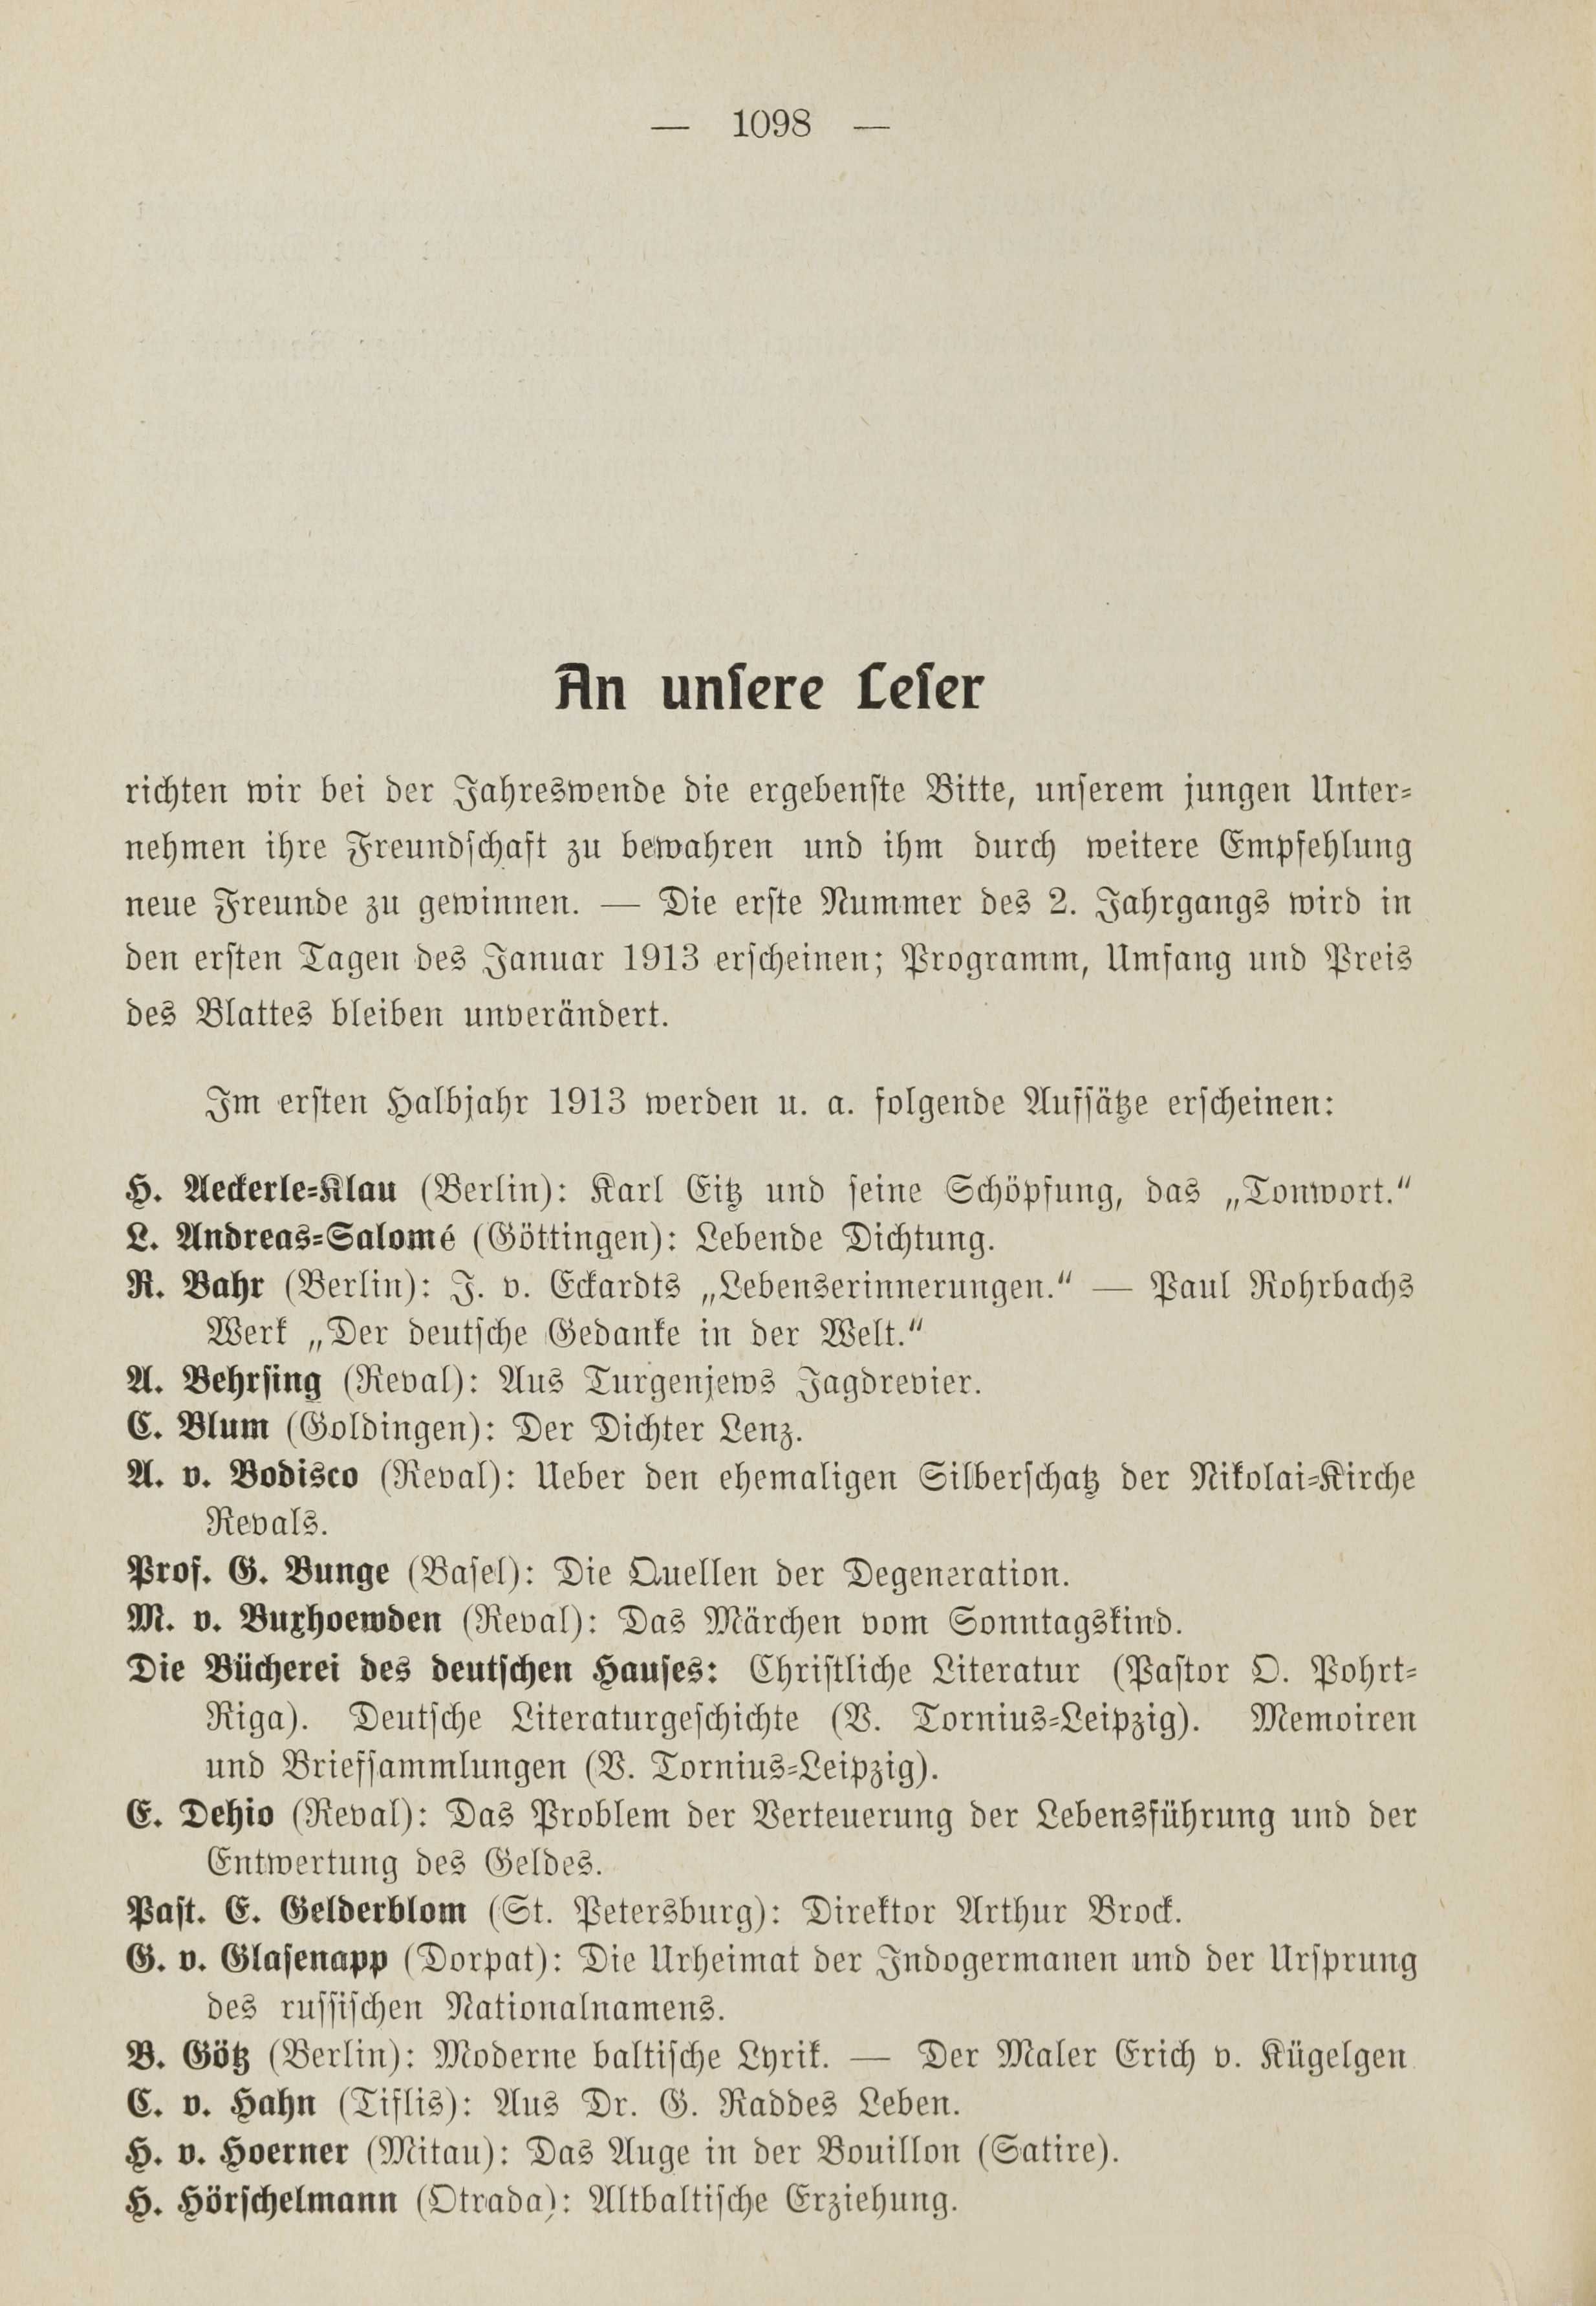 Deutsche Monatsschrift für Russland [1] (1912) | 1106. (1098) Haupttext